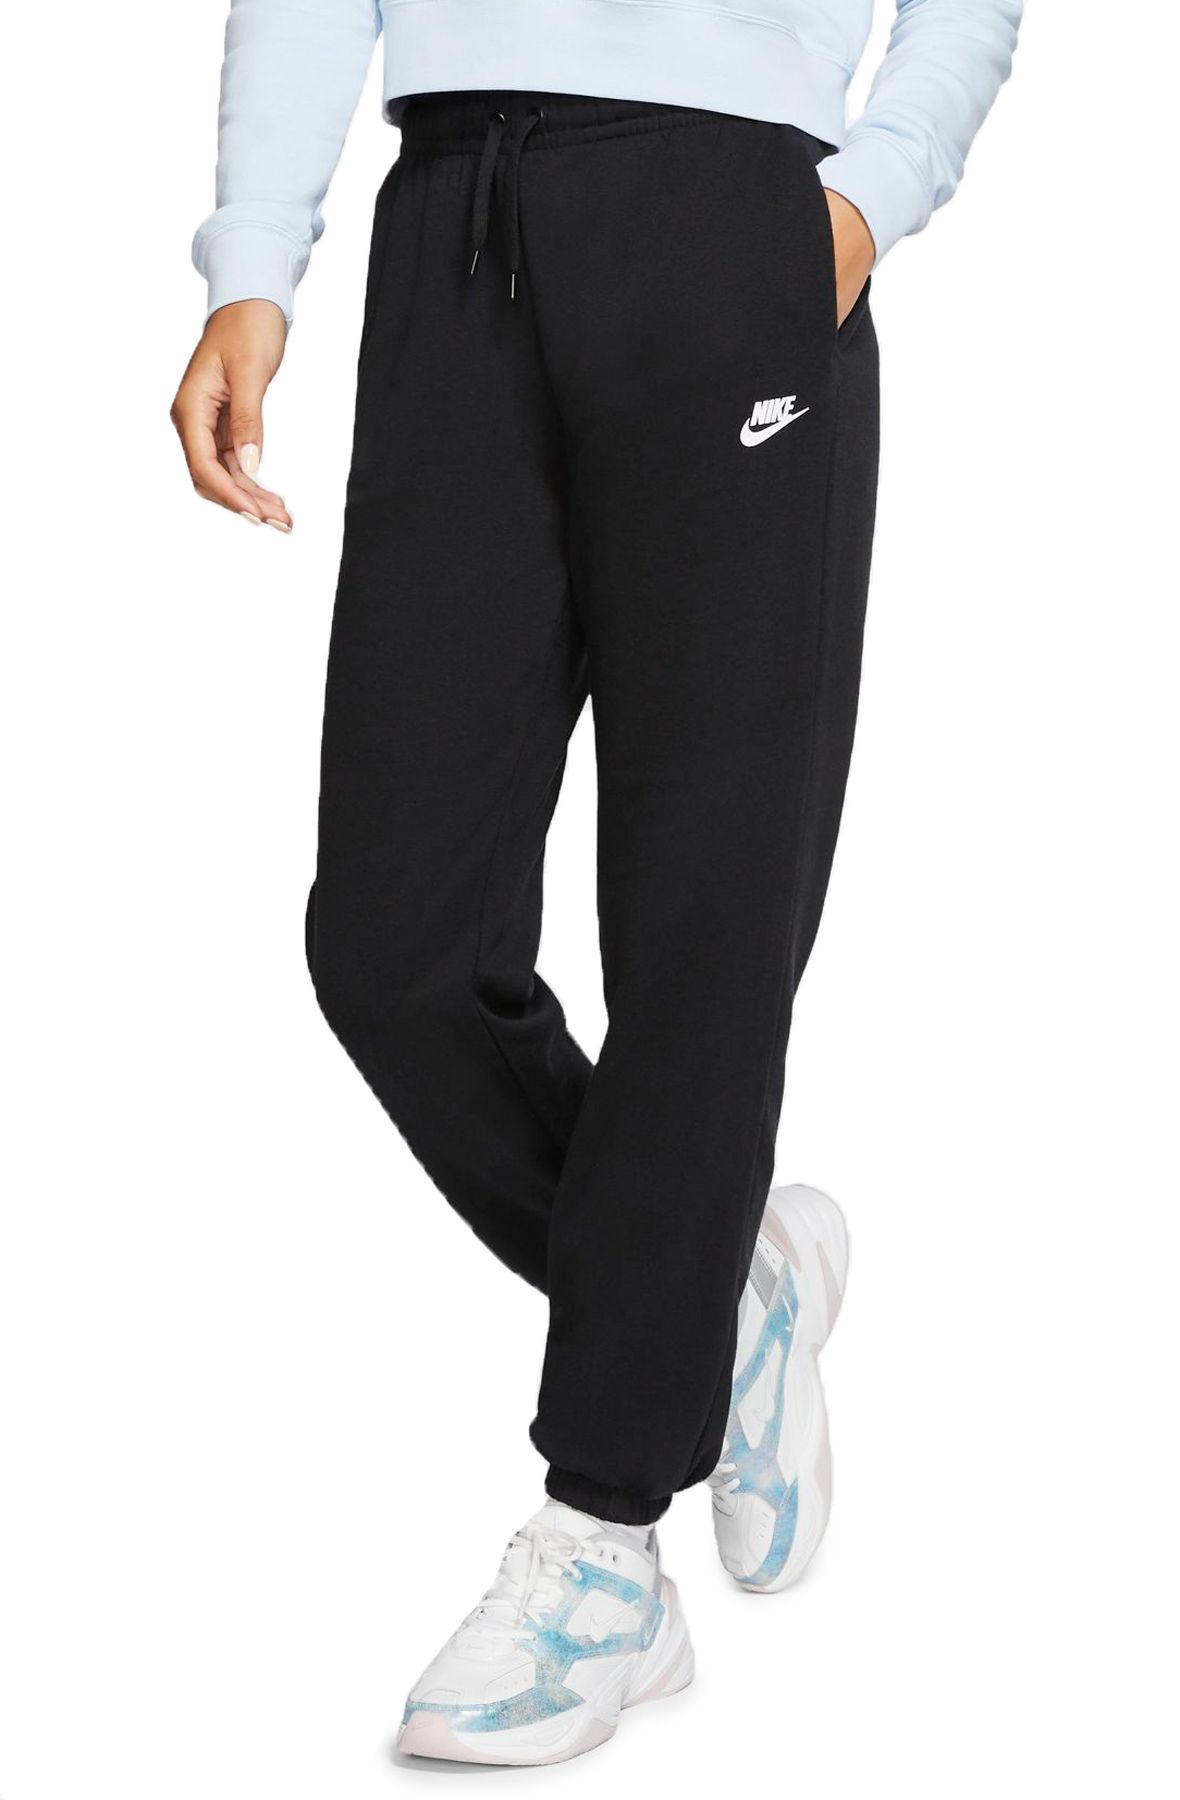  Nike Women's NSW Loose Pant Varsity, Dark Grey